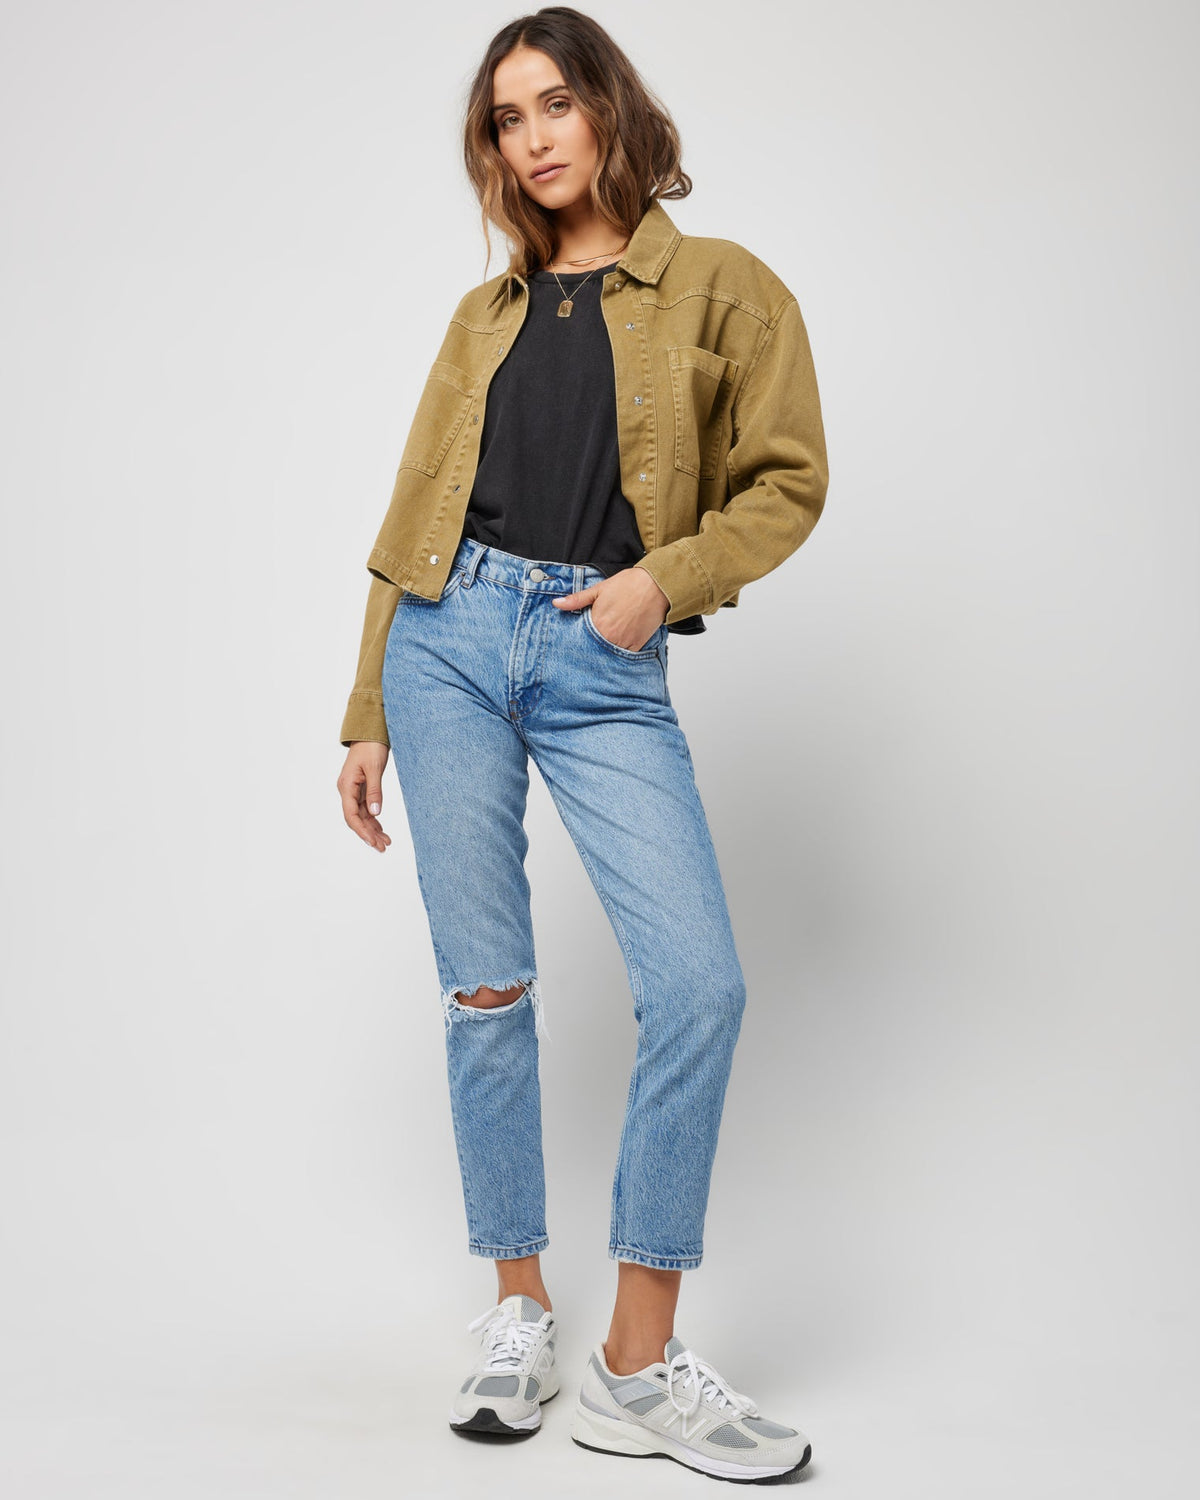 Harris Jacket Fern | Model: Anna (size: S)